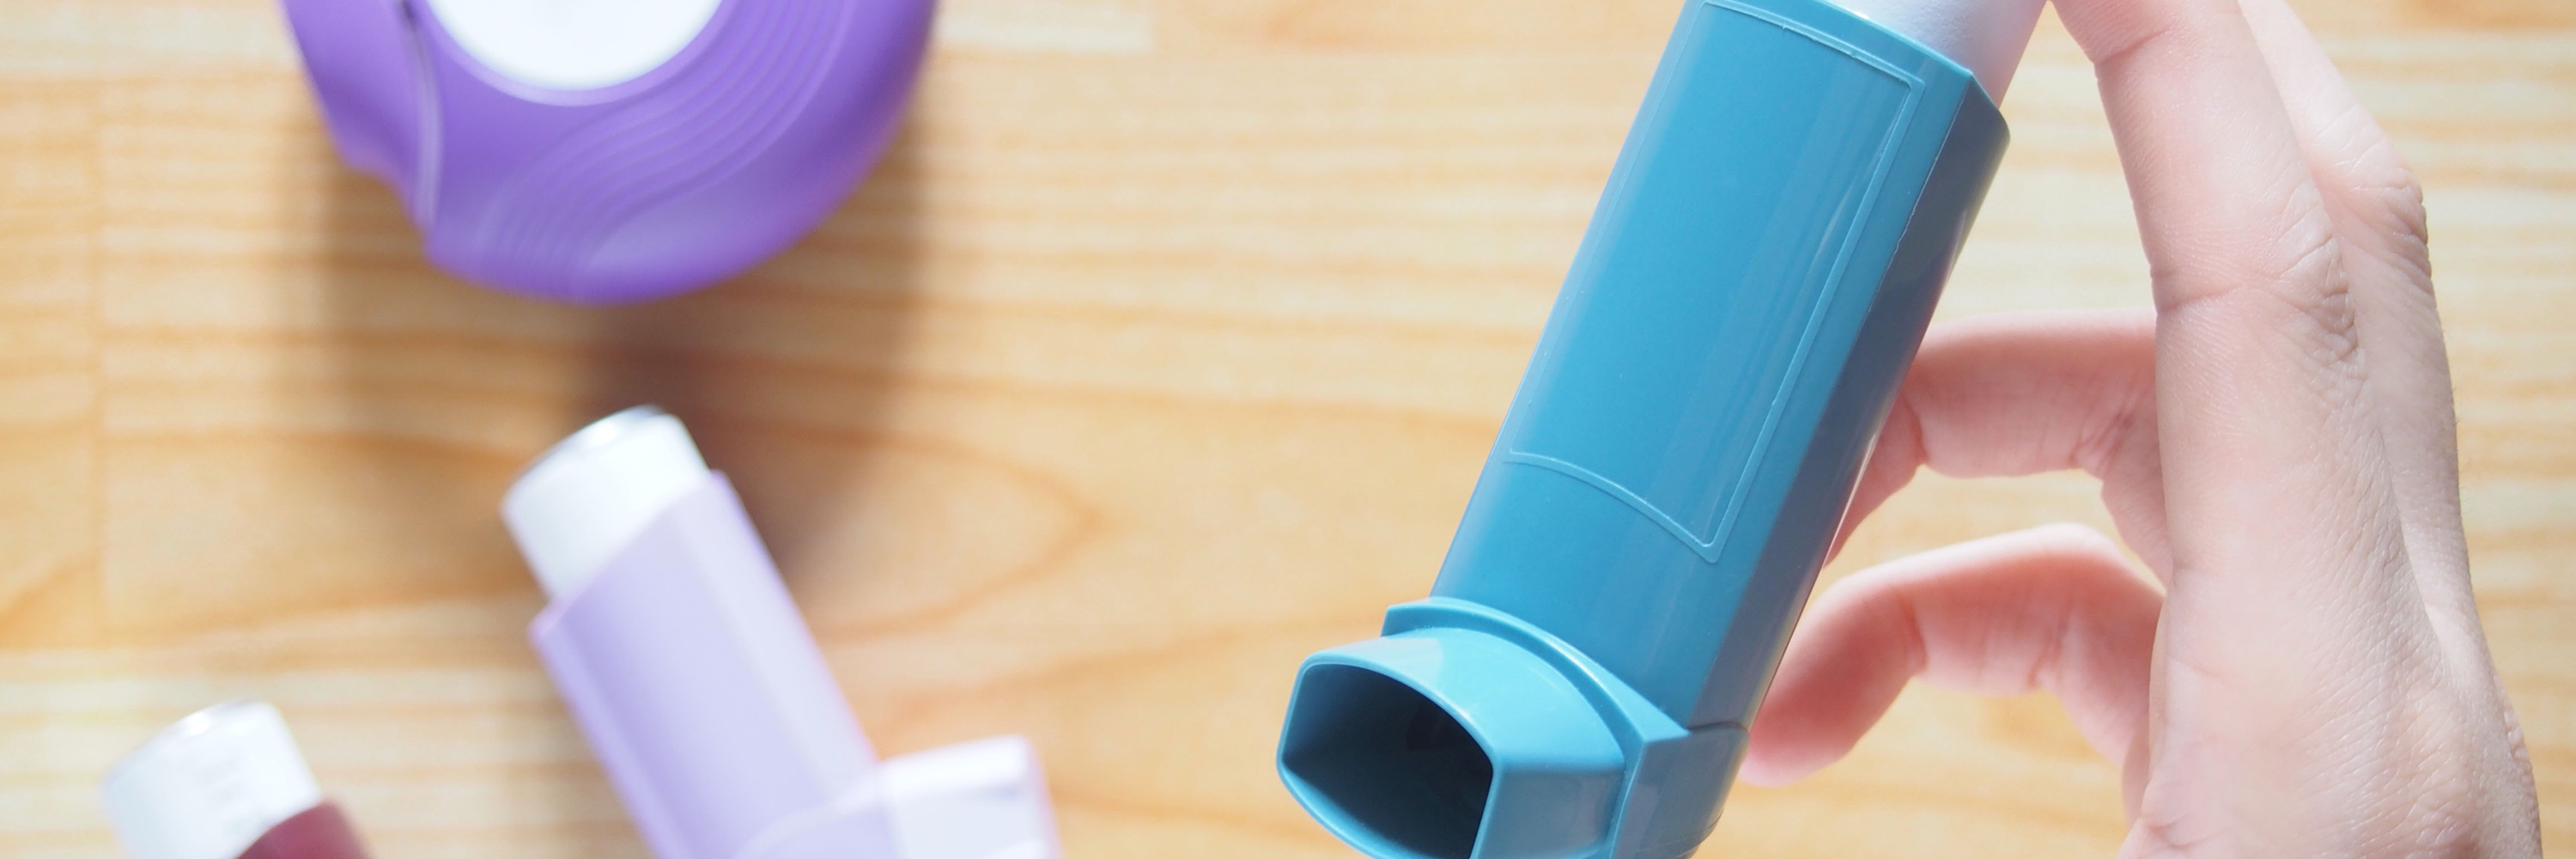 ингалятор для детей при бронхиальной астме